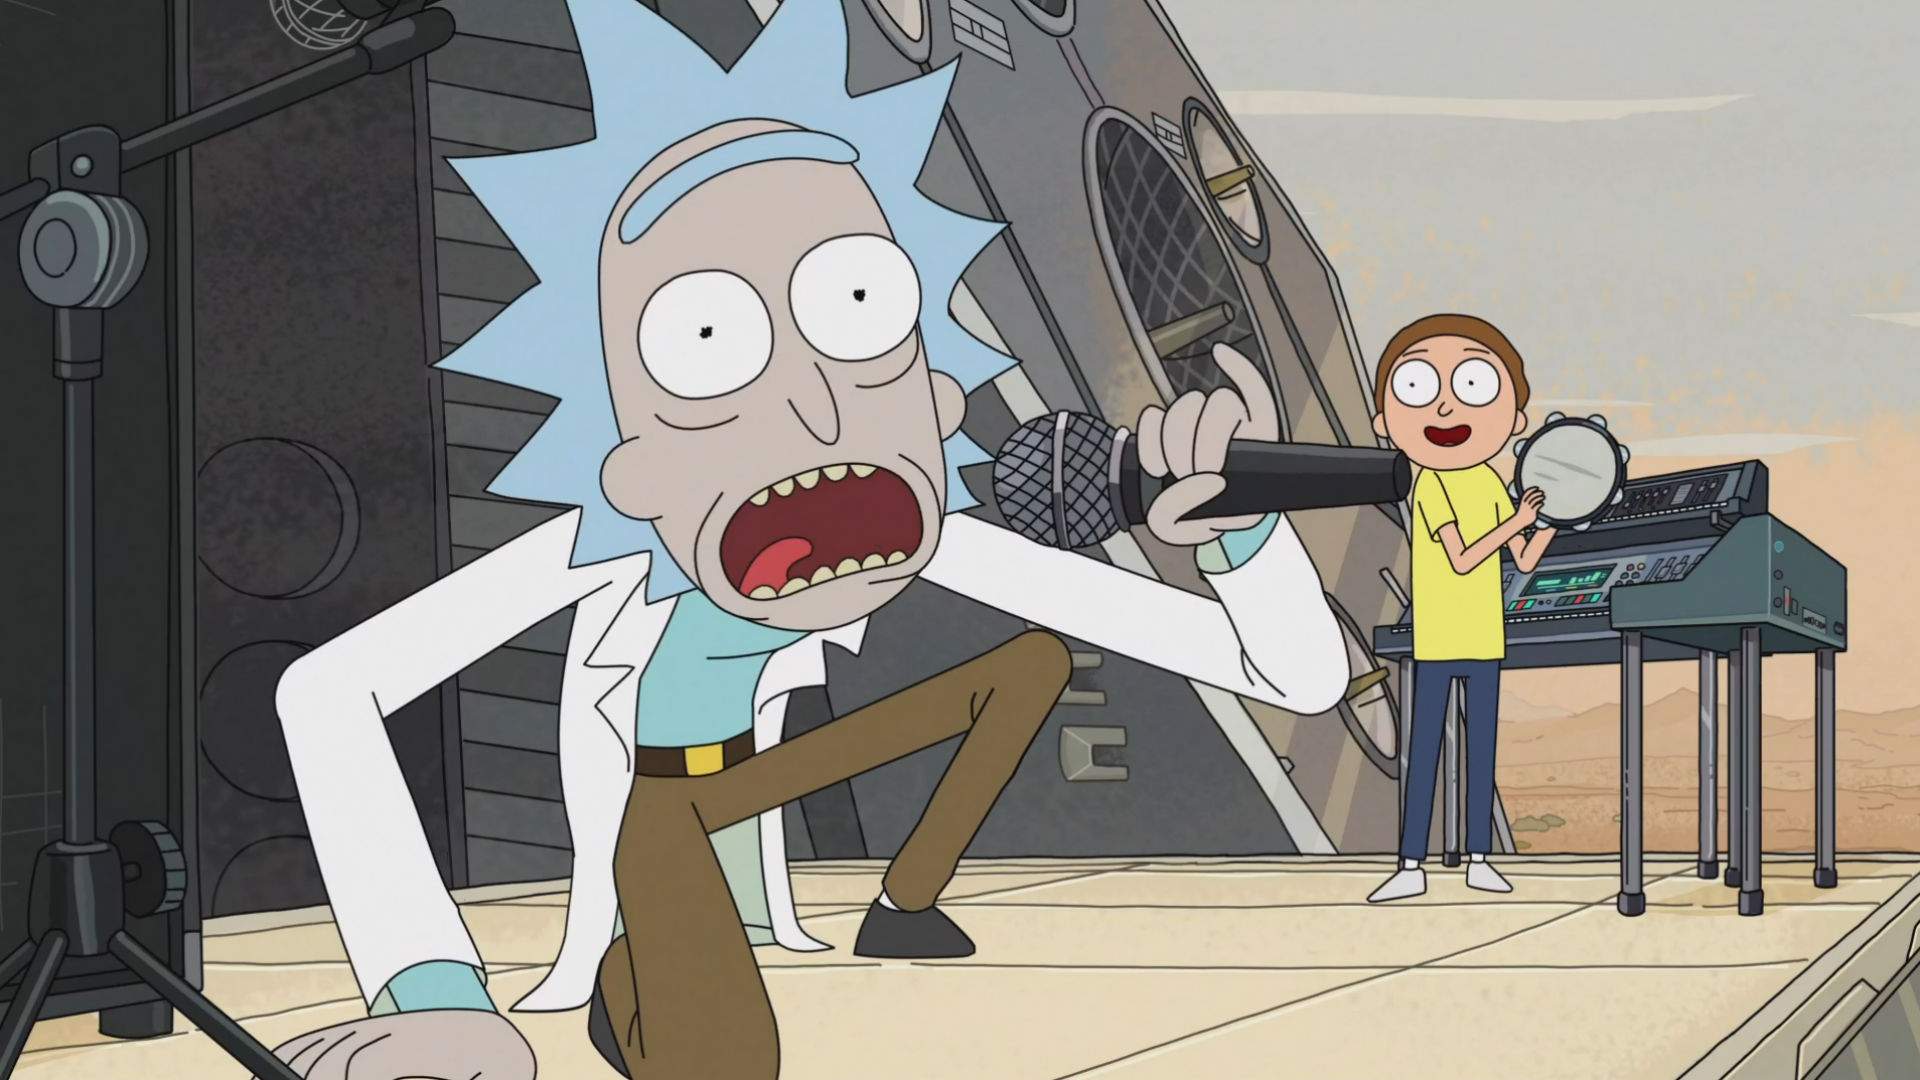 Rick and Morty Art Appreciation Show